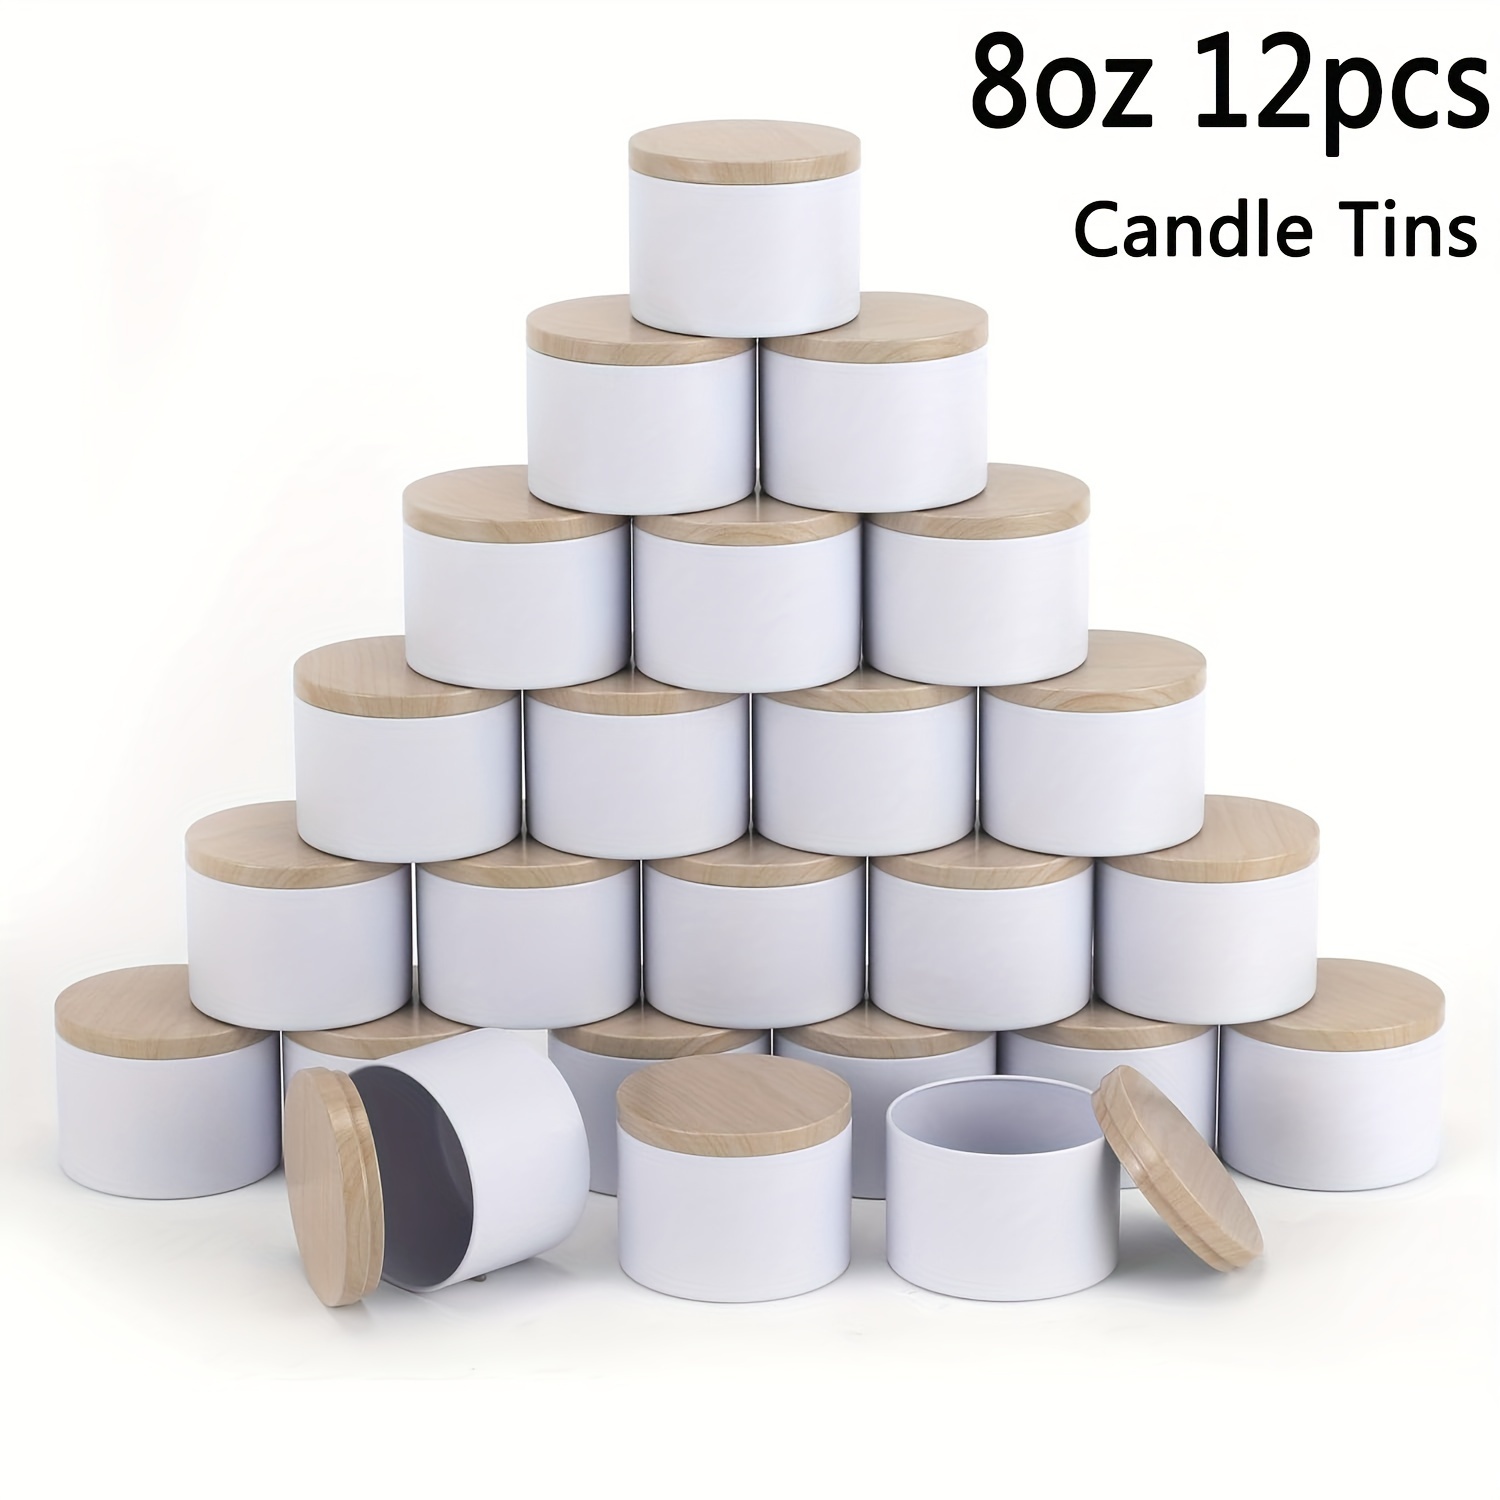 Paquete de 12 tarros de vela de vidrio para hacer velas, latas de velas  vacías de 10 onzas con tapas de bambú, recipientes de vela limpios a granel  al